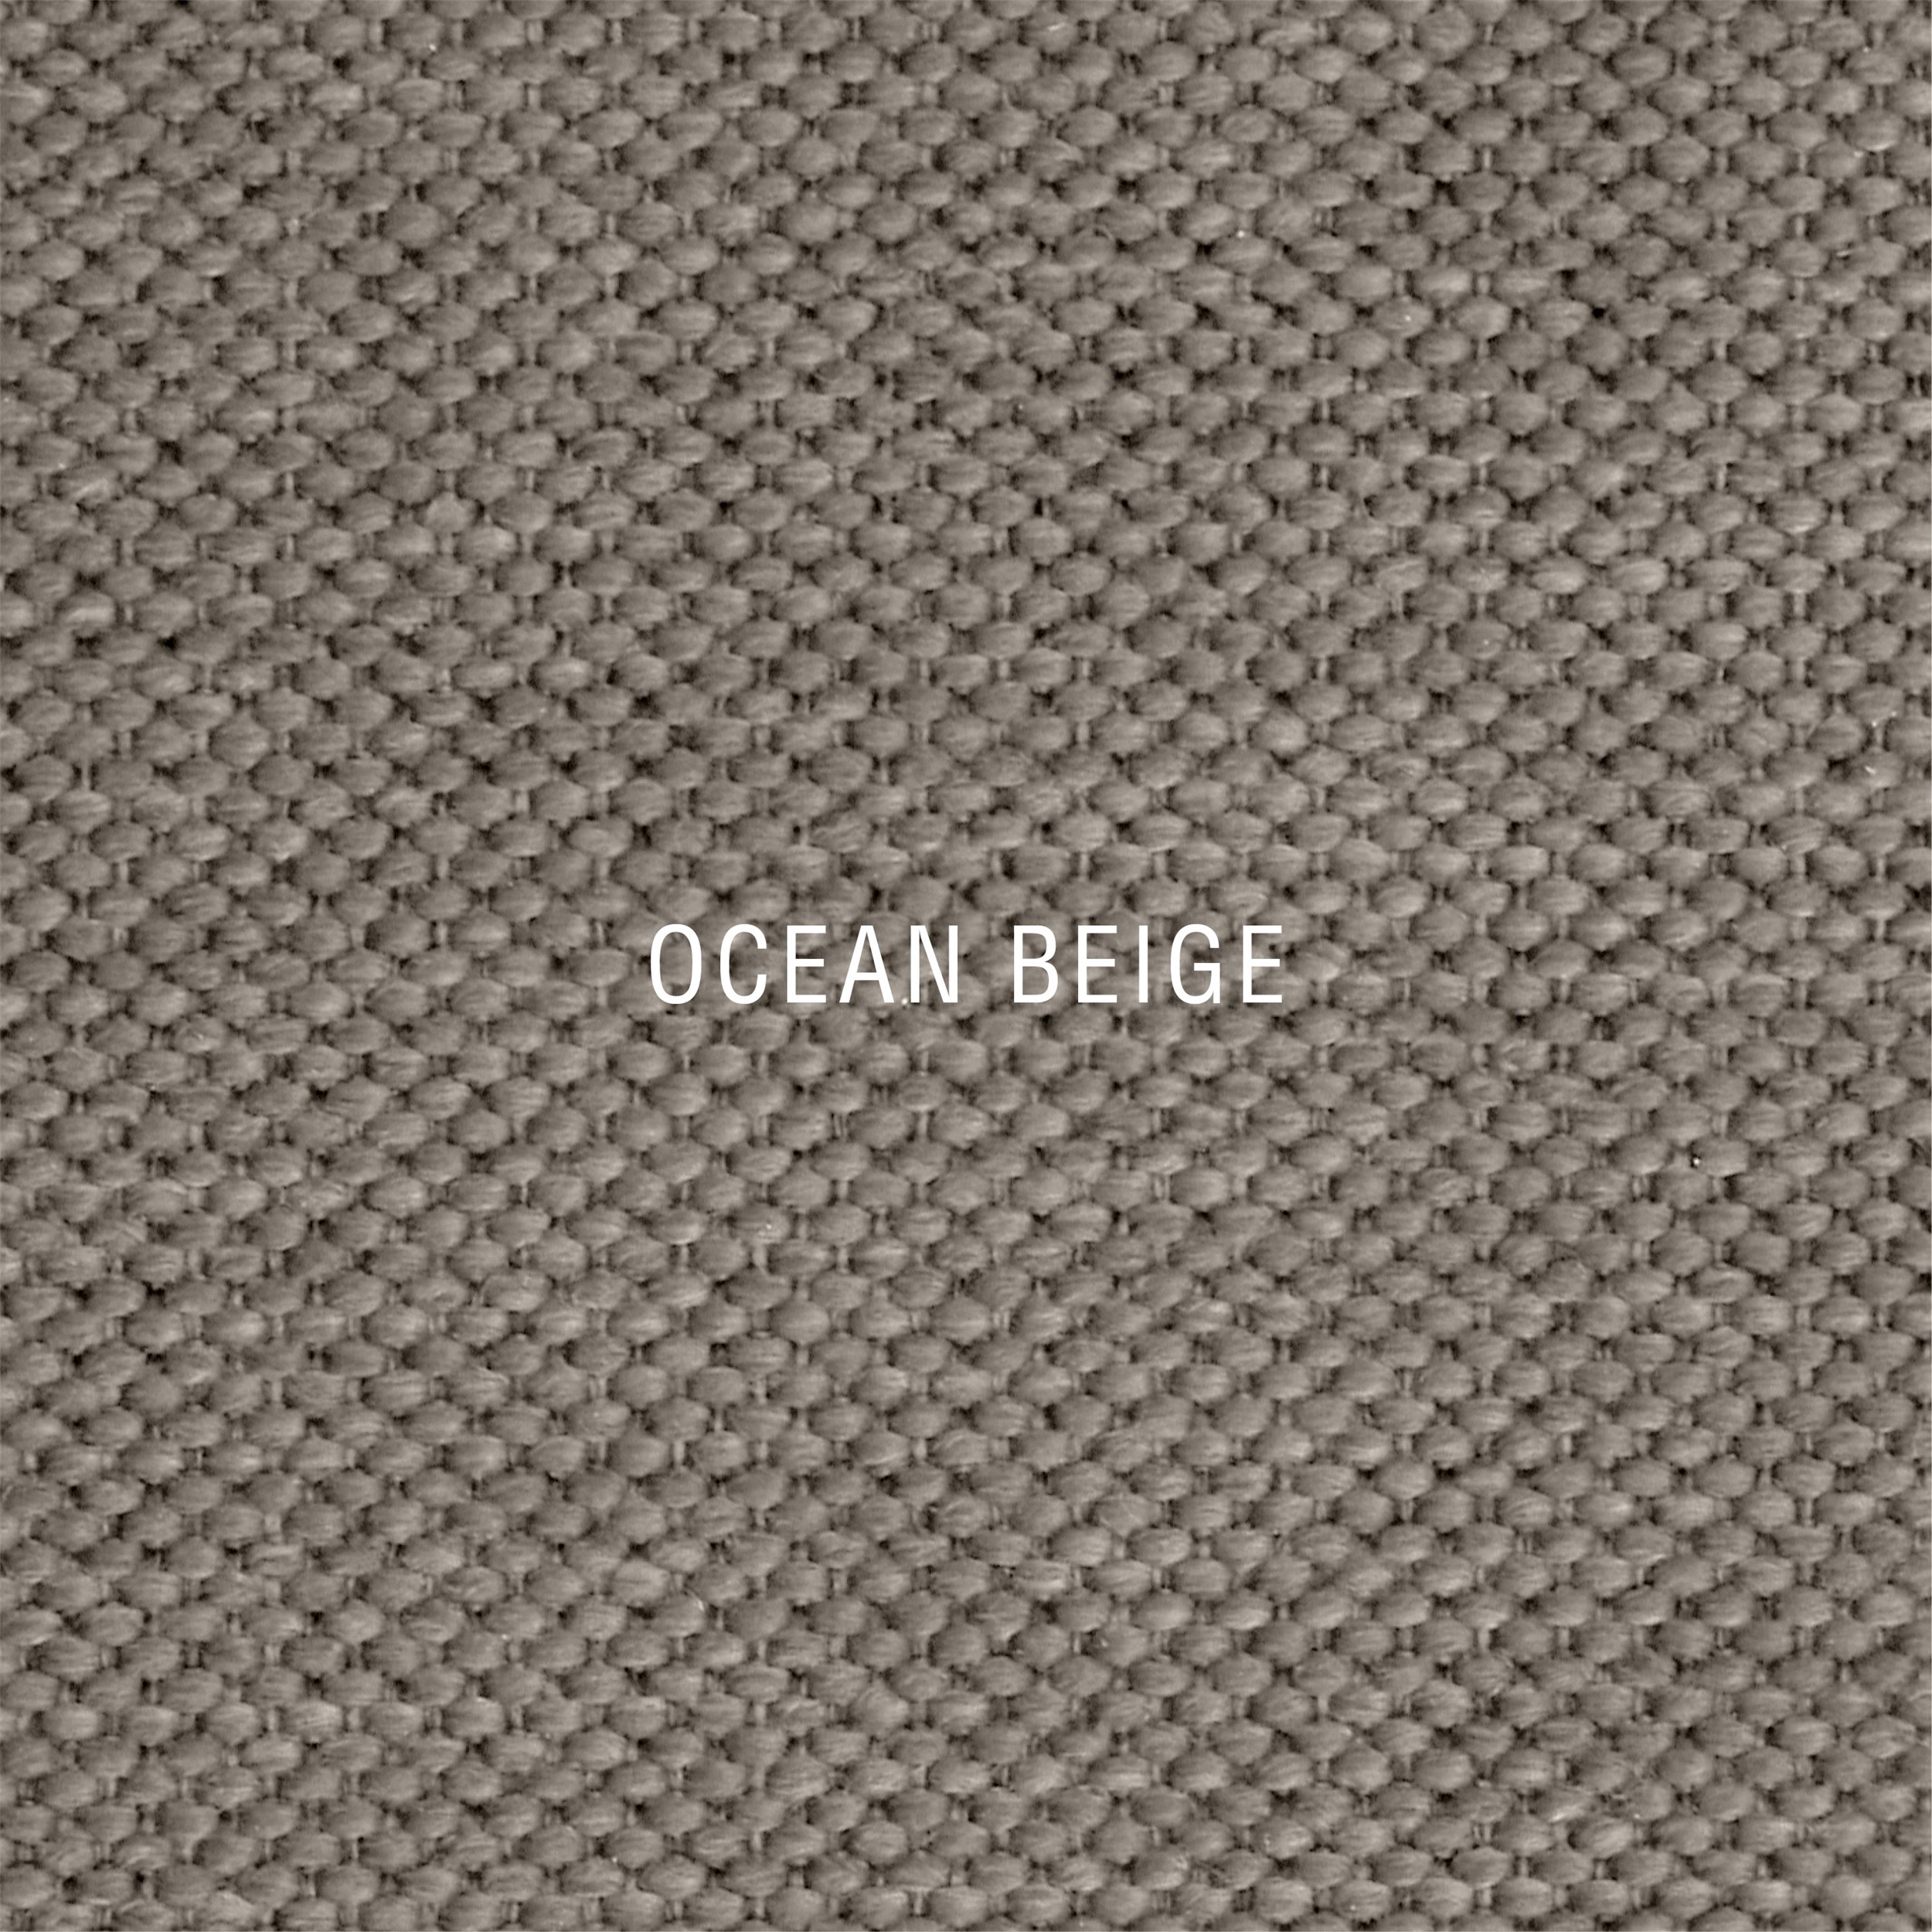 Nocturne Exclusive Ocean Inkl. 6 cm Exclusive Svane topmadras, 90 x 200 cm elevationsseng